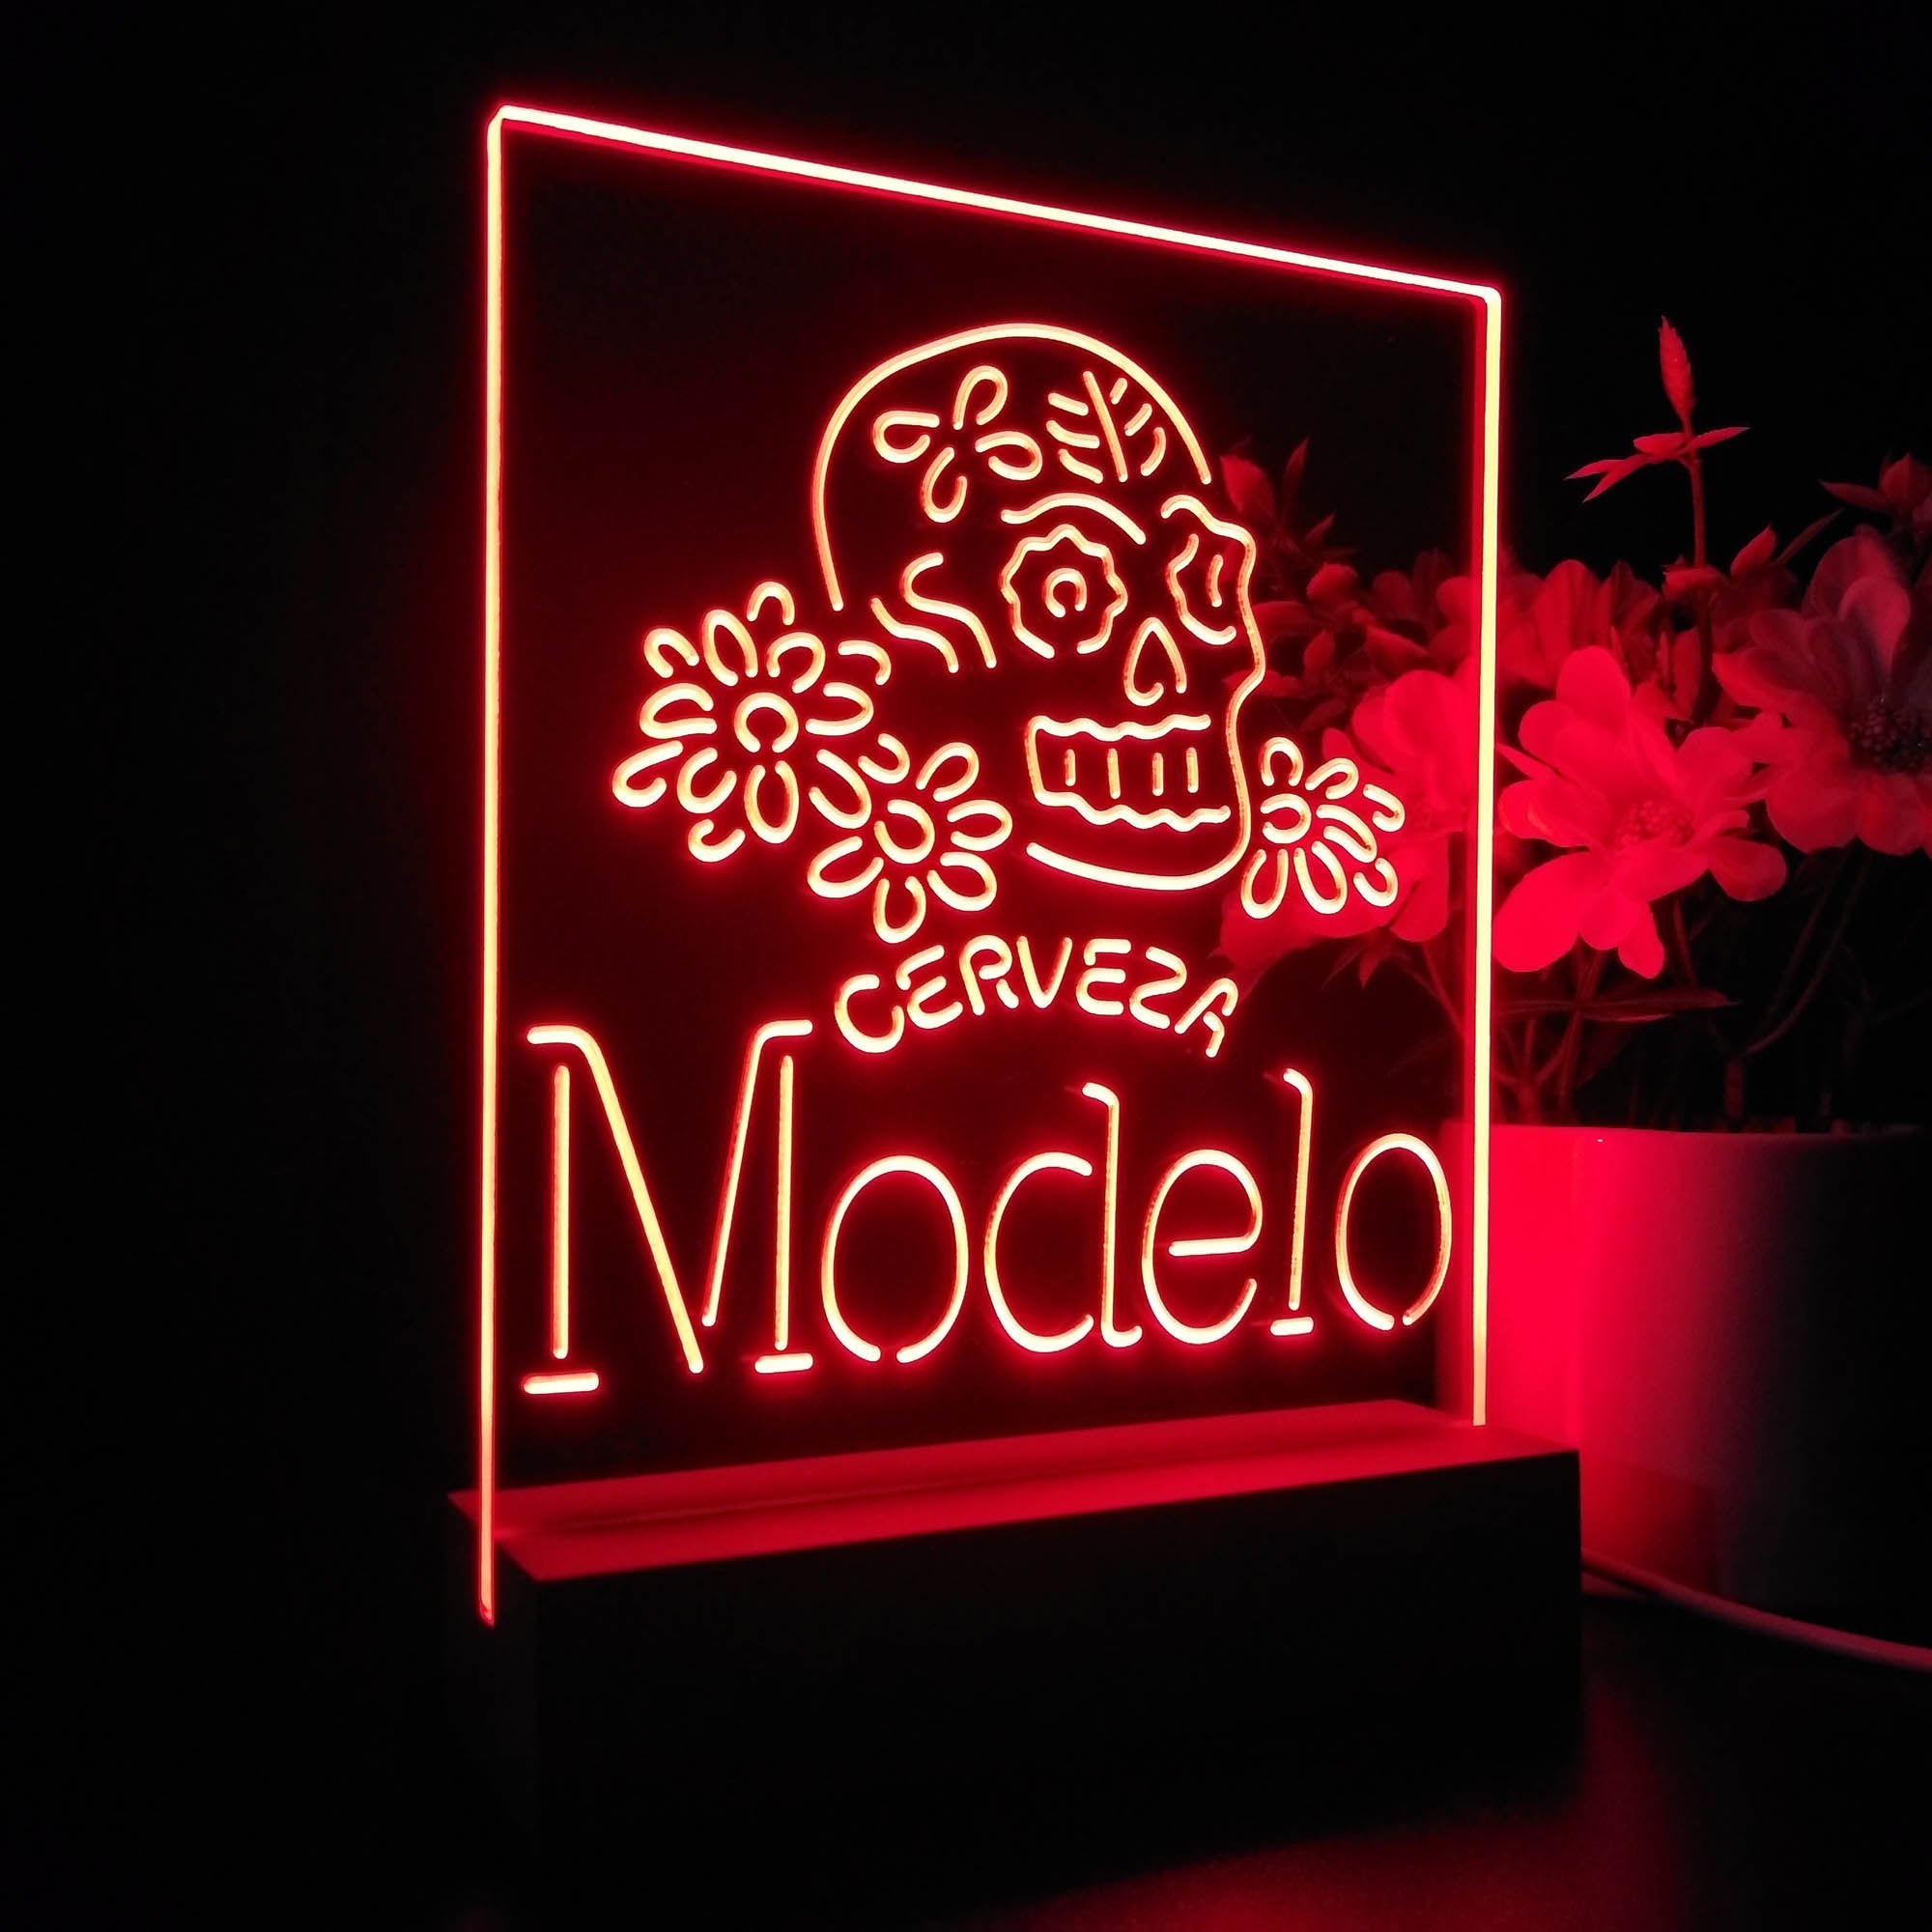 Cervezas Modelos Skull Bar 3D Illusion Night Light Desk Lamp